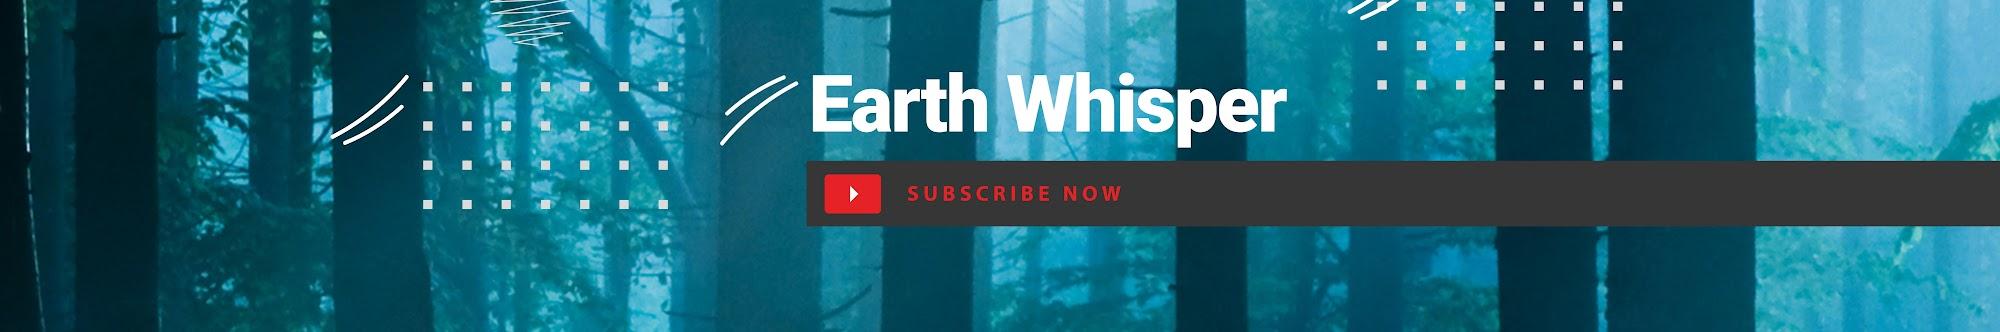 Earth Whisper